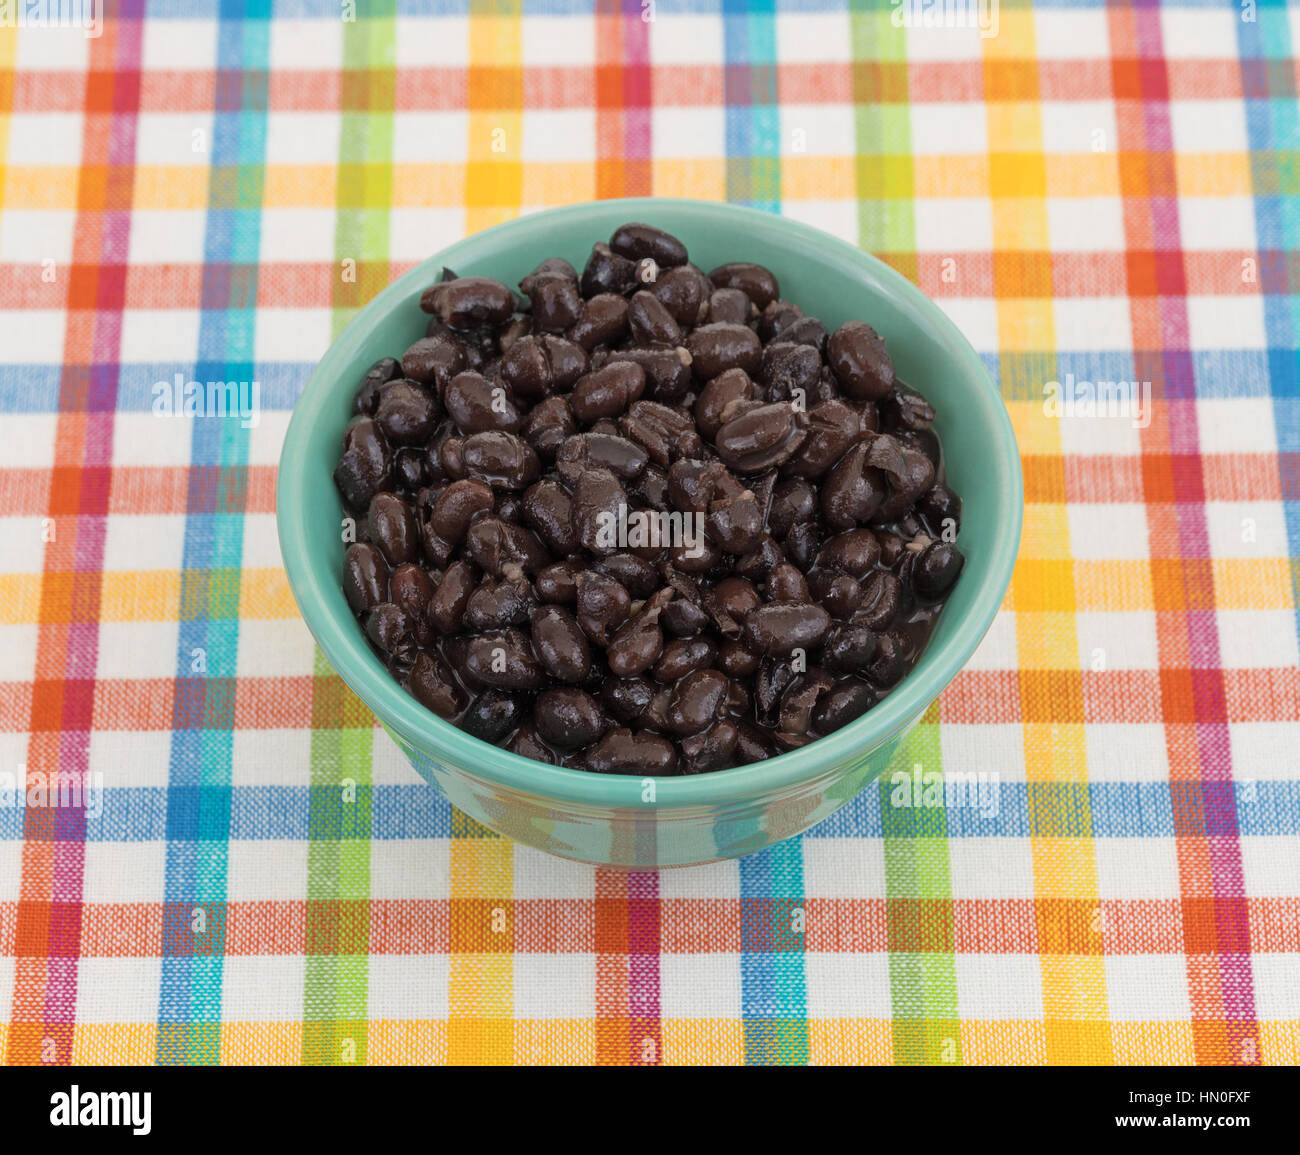 Une assiette de haricots noirs bio dans un bol sur un tapis coloré. Banque D'Images